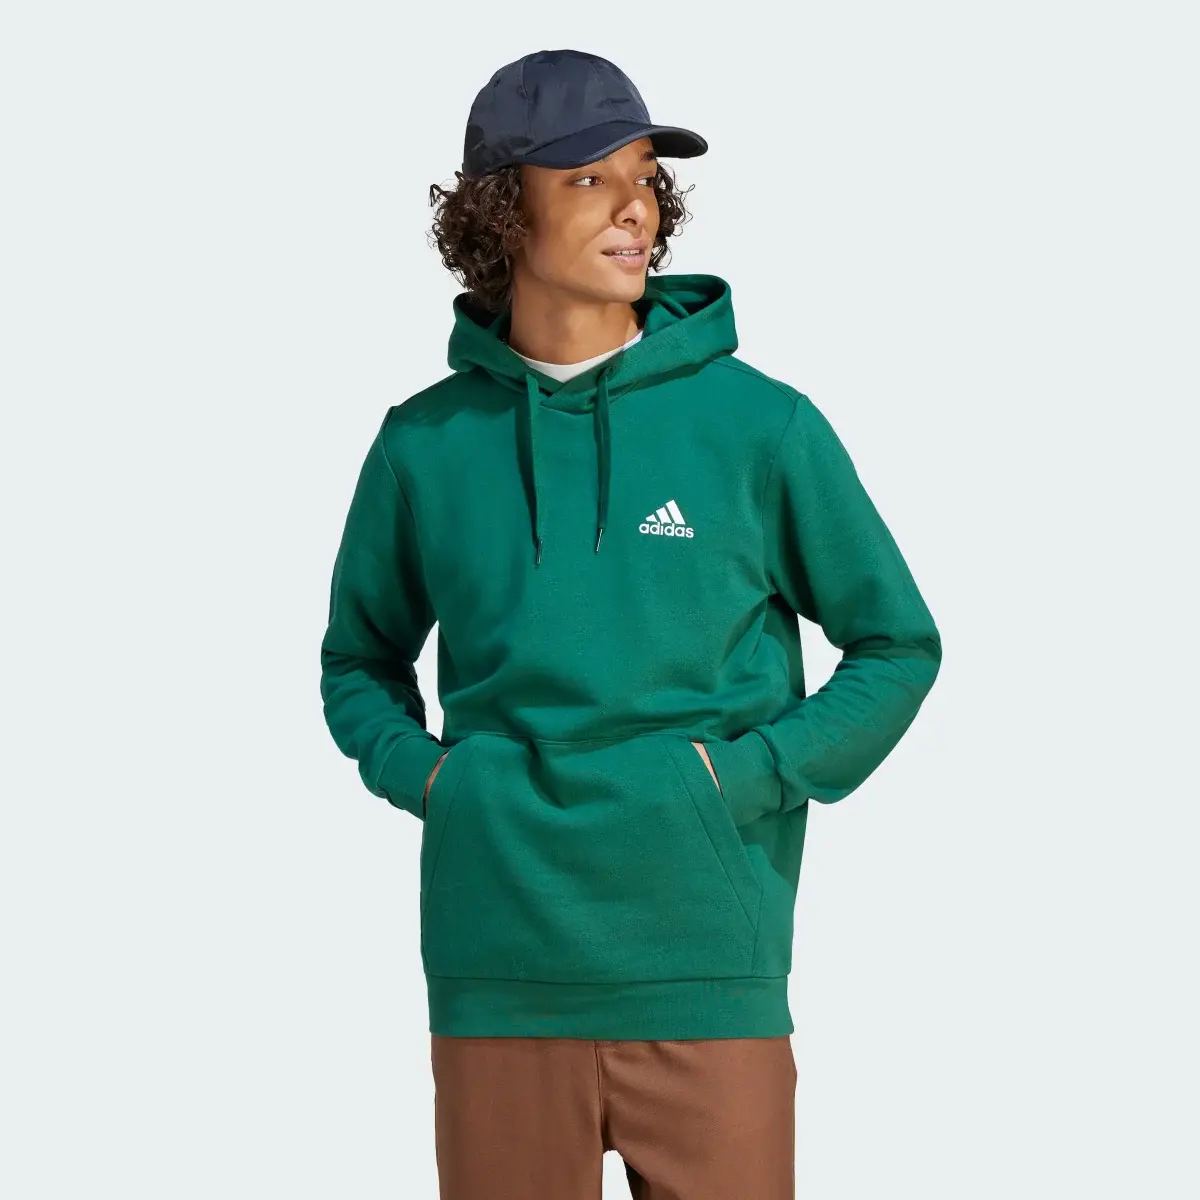 Adidas Camisola com Capuz em Fleece Essentials. 2